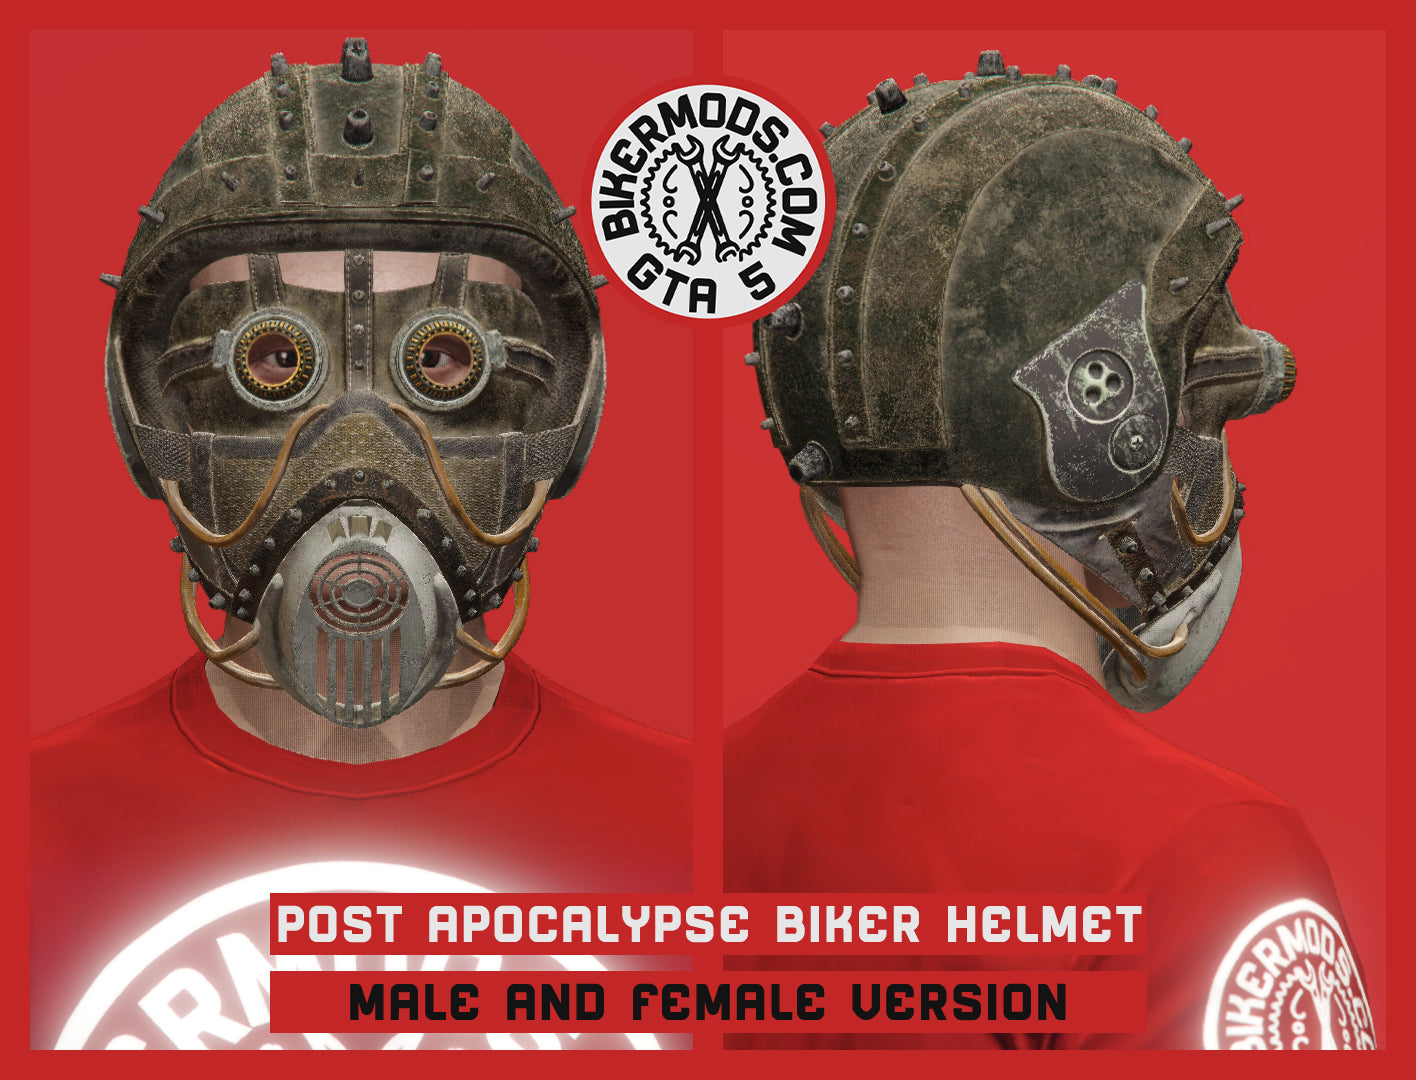 Post Apocalypse Biker Helmet